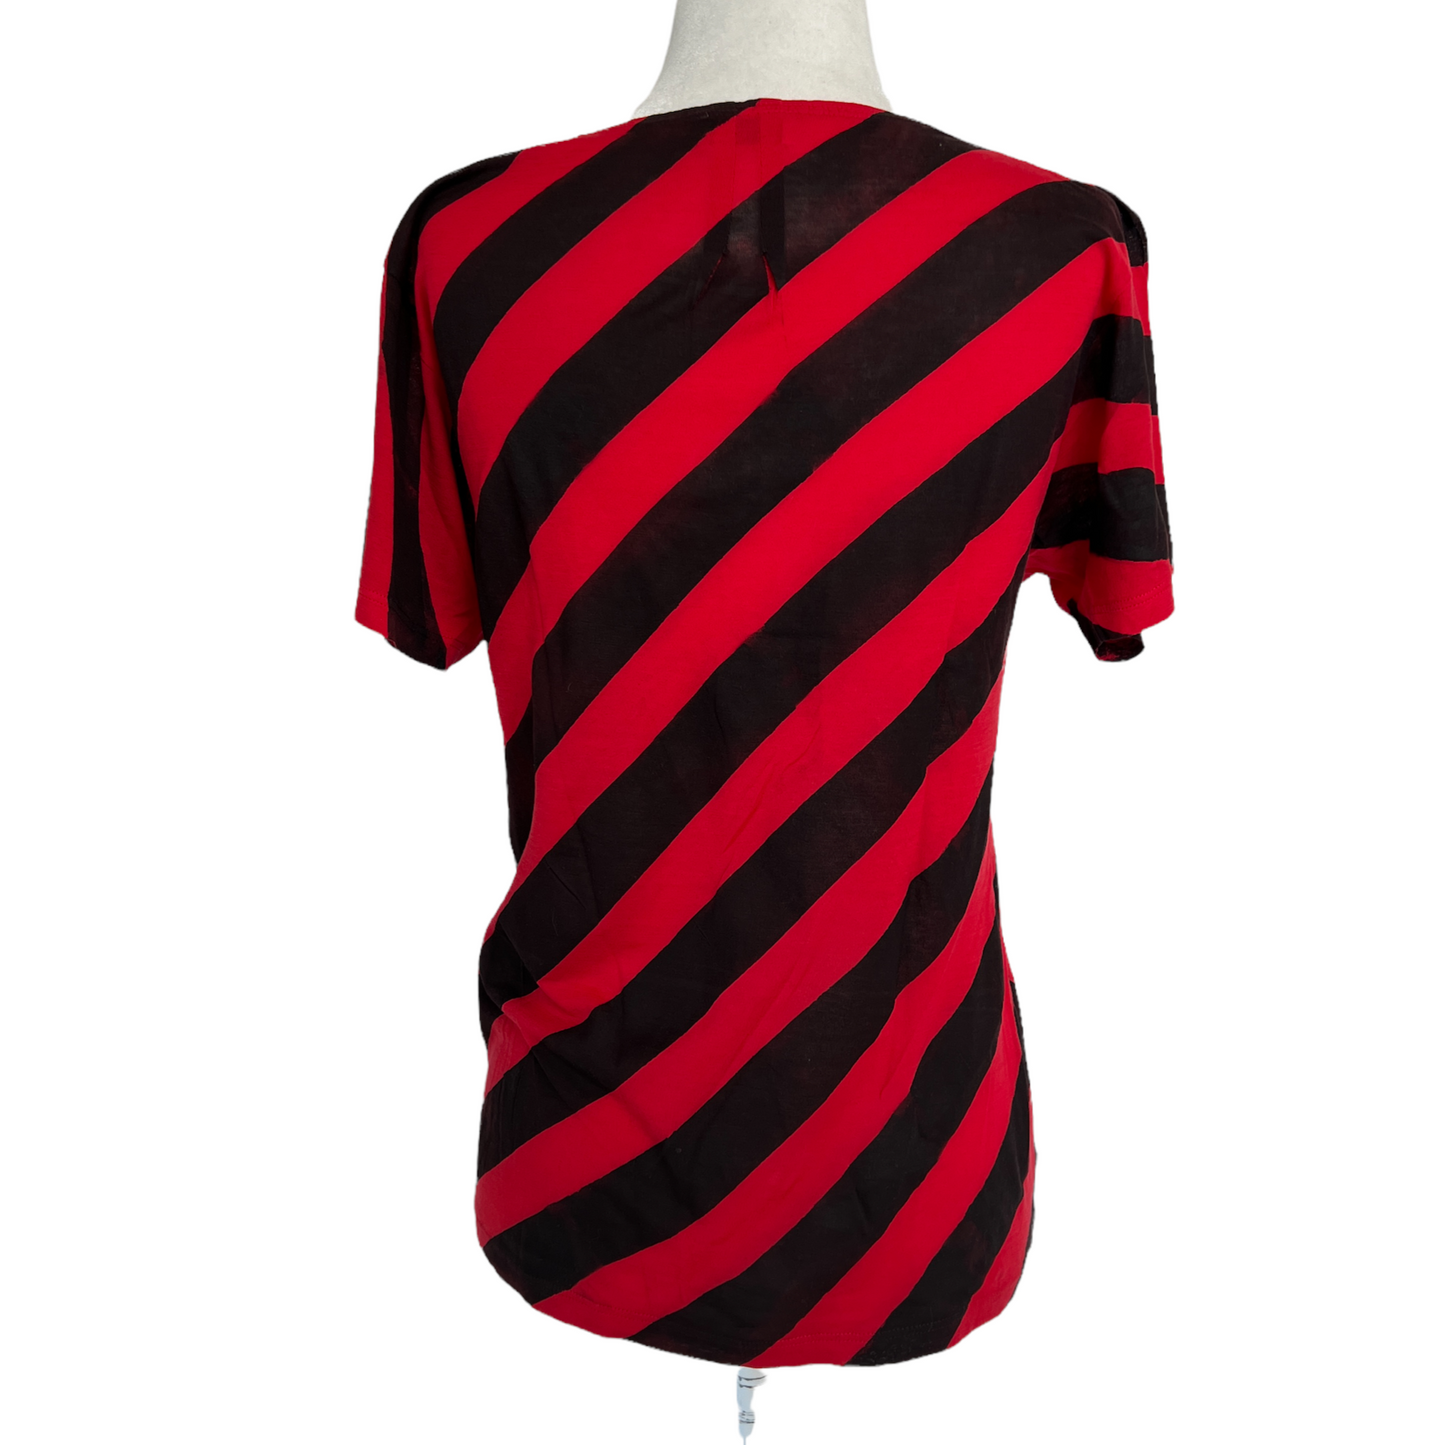 Black & Red Cotton Tshirt - XS